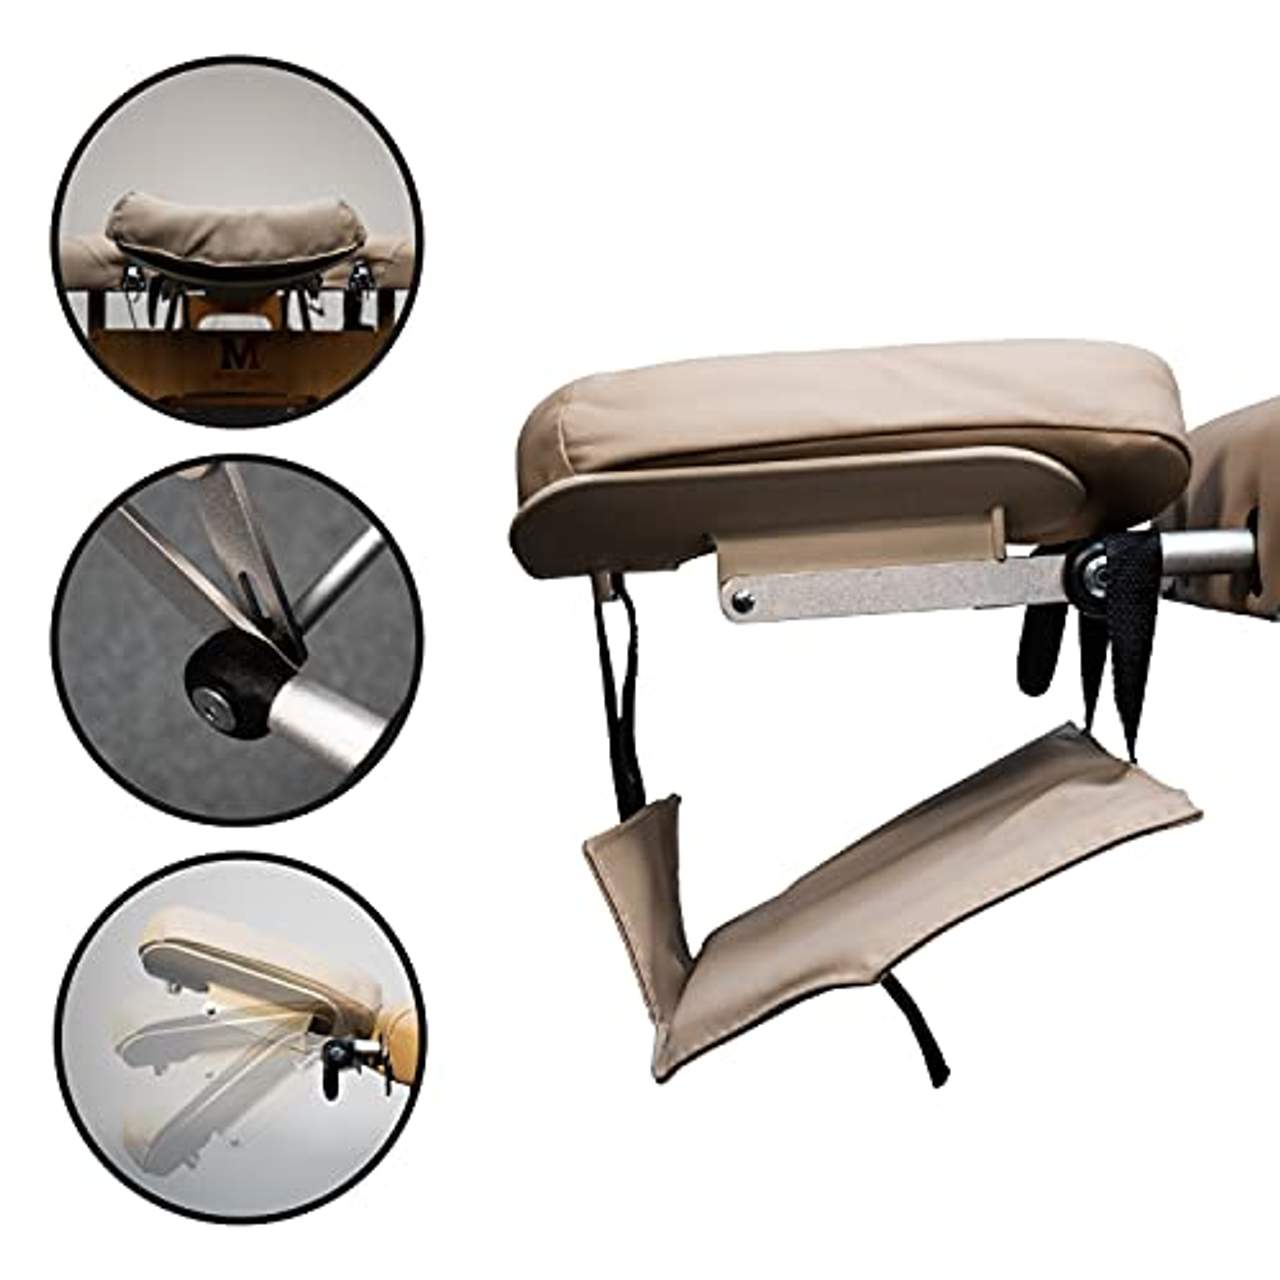 MASSUNDA Comfort Deluxe -Massage-Liege klappbar und höhenverstellbar-185cmx71cm